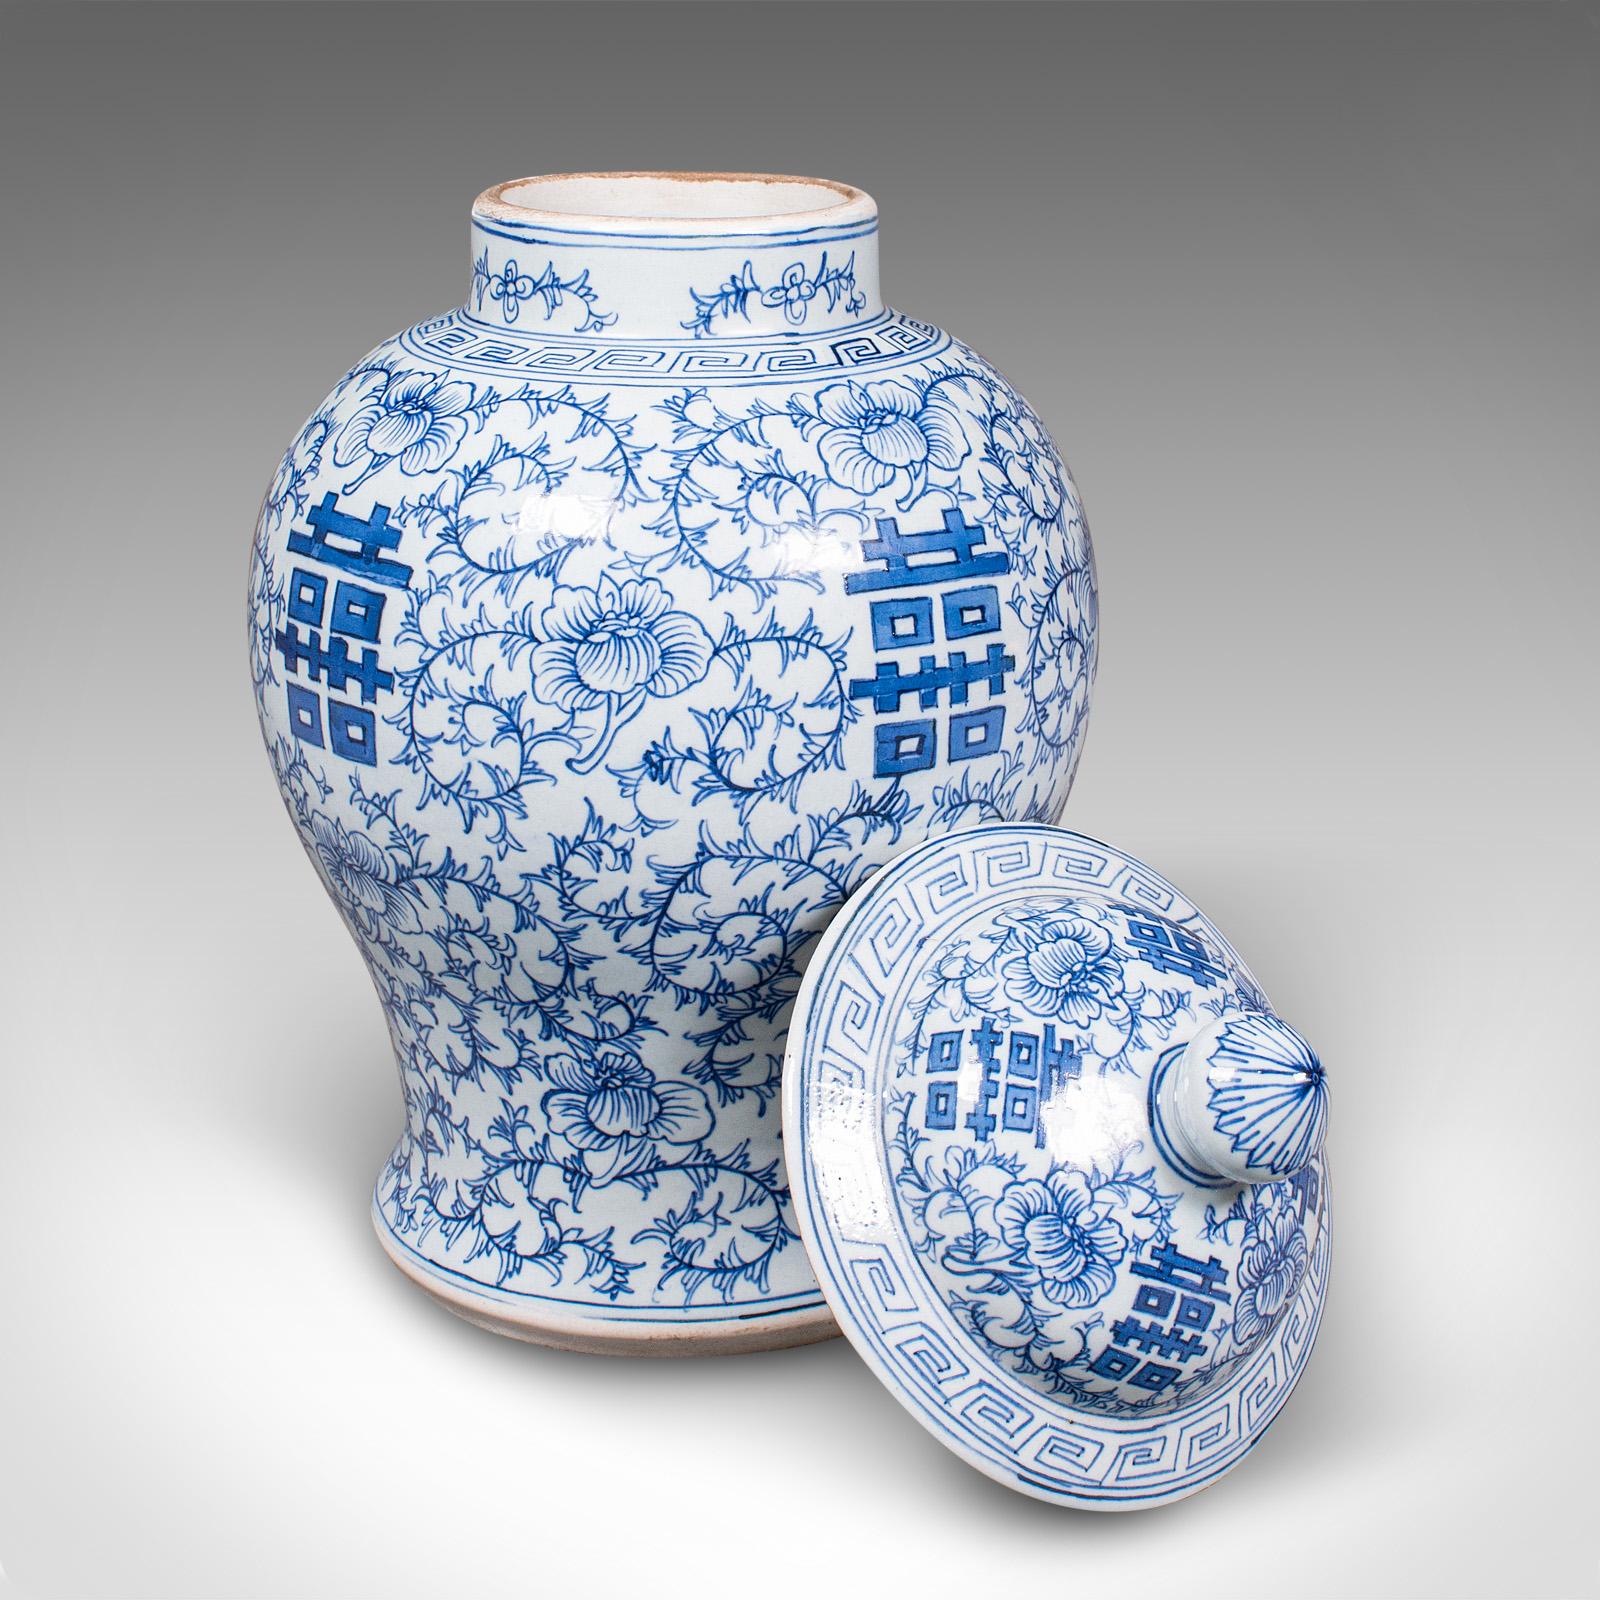 Dies ist eine dekorative Vintage-Blumenvase. Eine chinesische Urne mit Deckel aus Keramik aus der Zeit des Art déco, um 1930.

Angenehmer Blickfang mit ansprechendem blau-weißem Finish
Mit wünschenswerter Alterspatina und in gutem Zustand
Weißer